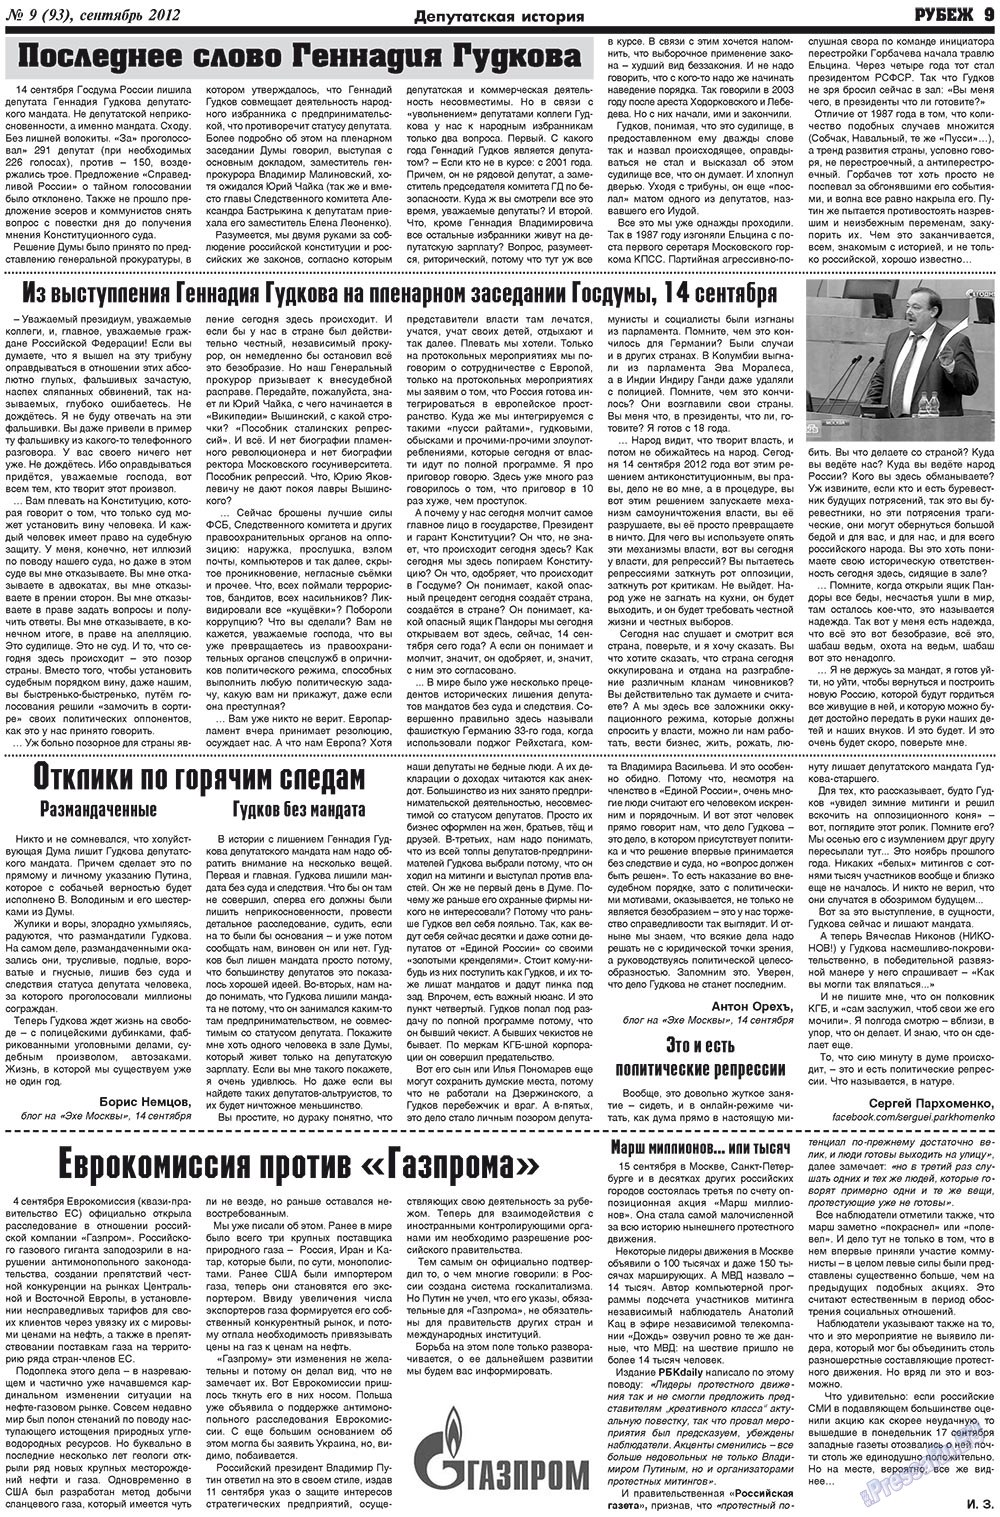 Рубеж (газета). 2012 год, номер 9, стр. 9